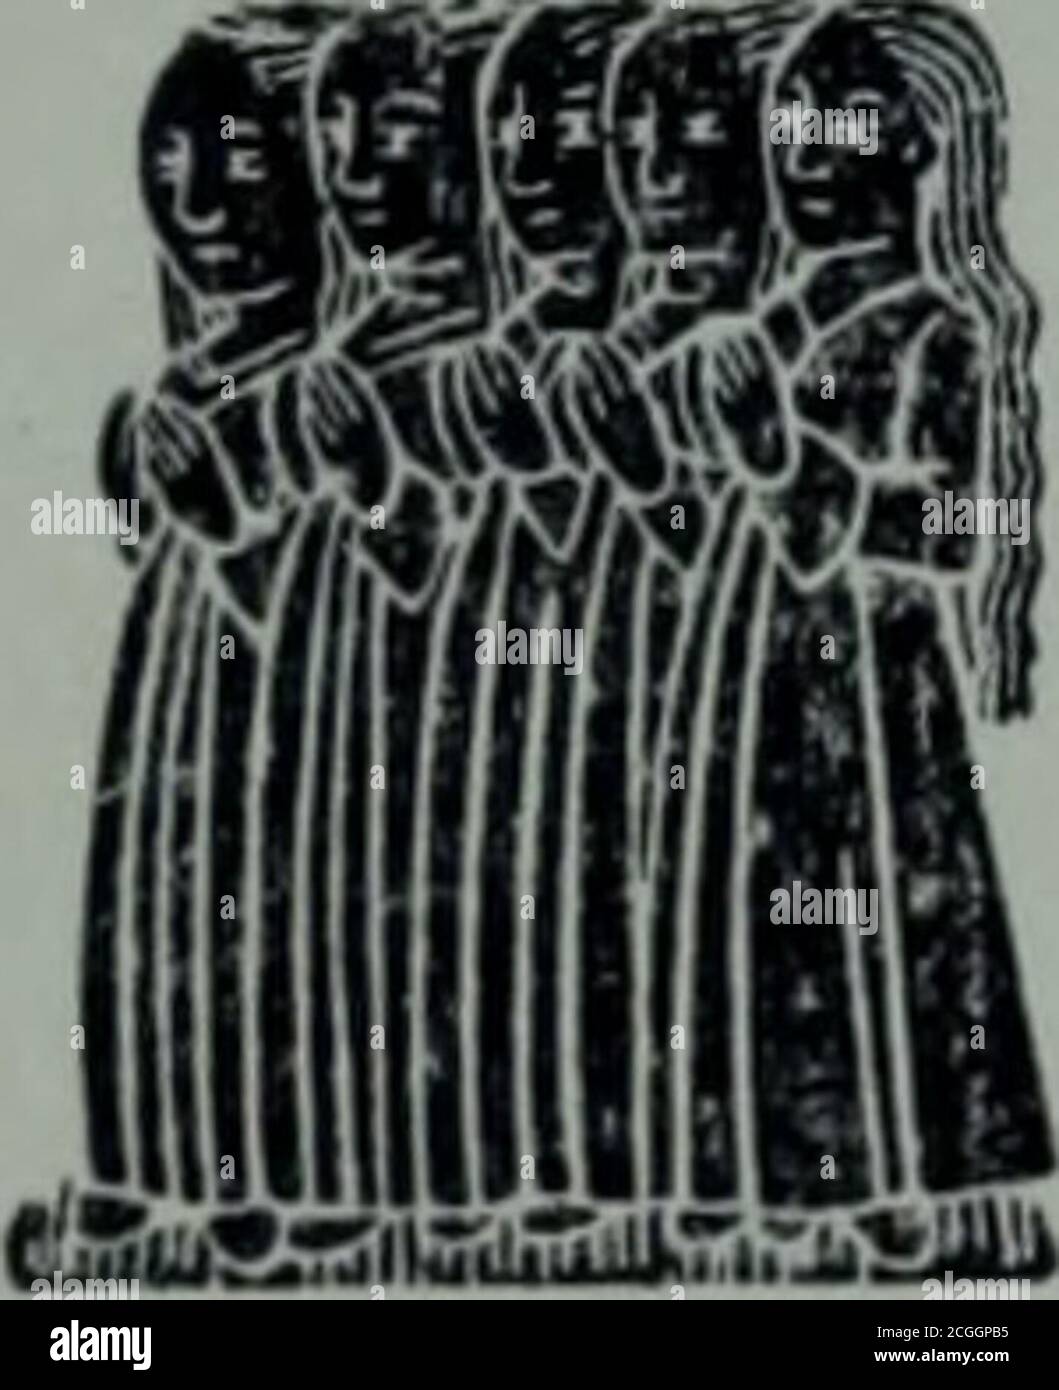 . Surrey archäologische Sammlungen . JOHN SNELLING UND FRAU ALICE. 1498.EAST HORSLEY, SURREY. (Ein Sechstel voller Größe.) und eine eng anliegende Krone mit engen Ärmeln und Pelzmanschetten, um mit einer kleinen Tasche oder Abstammung hängen aus dem Gürtel hinter der Figur. ii 2 100 EINE LISTE DER MONUMENTALEN BRASSES TX SURREY. Unterhalb der Bildnis ist eine dreizeilige Inschrift in schwarzem Buchstaben: Prau für tljc &lt;Sofollis von 3ol)n Sfoellgng 1 algs Ijos foofctljc ixiljuclj trcsccoti. Tljc out tiau of ffcucrull in tje pa* of otorlortje ffl0€C££0 Ixxxxum on tofjole, unter der Aufschrift Sofjole Stockfoto